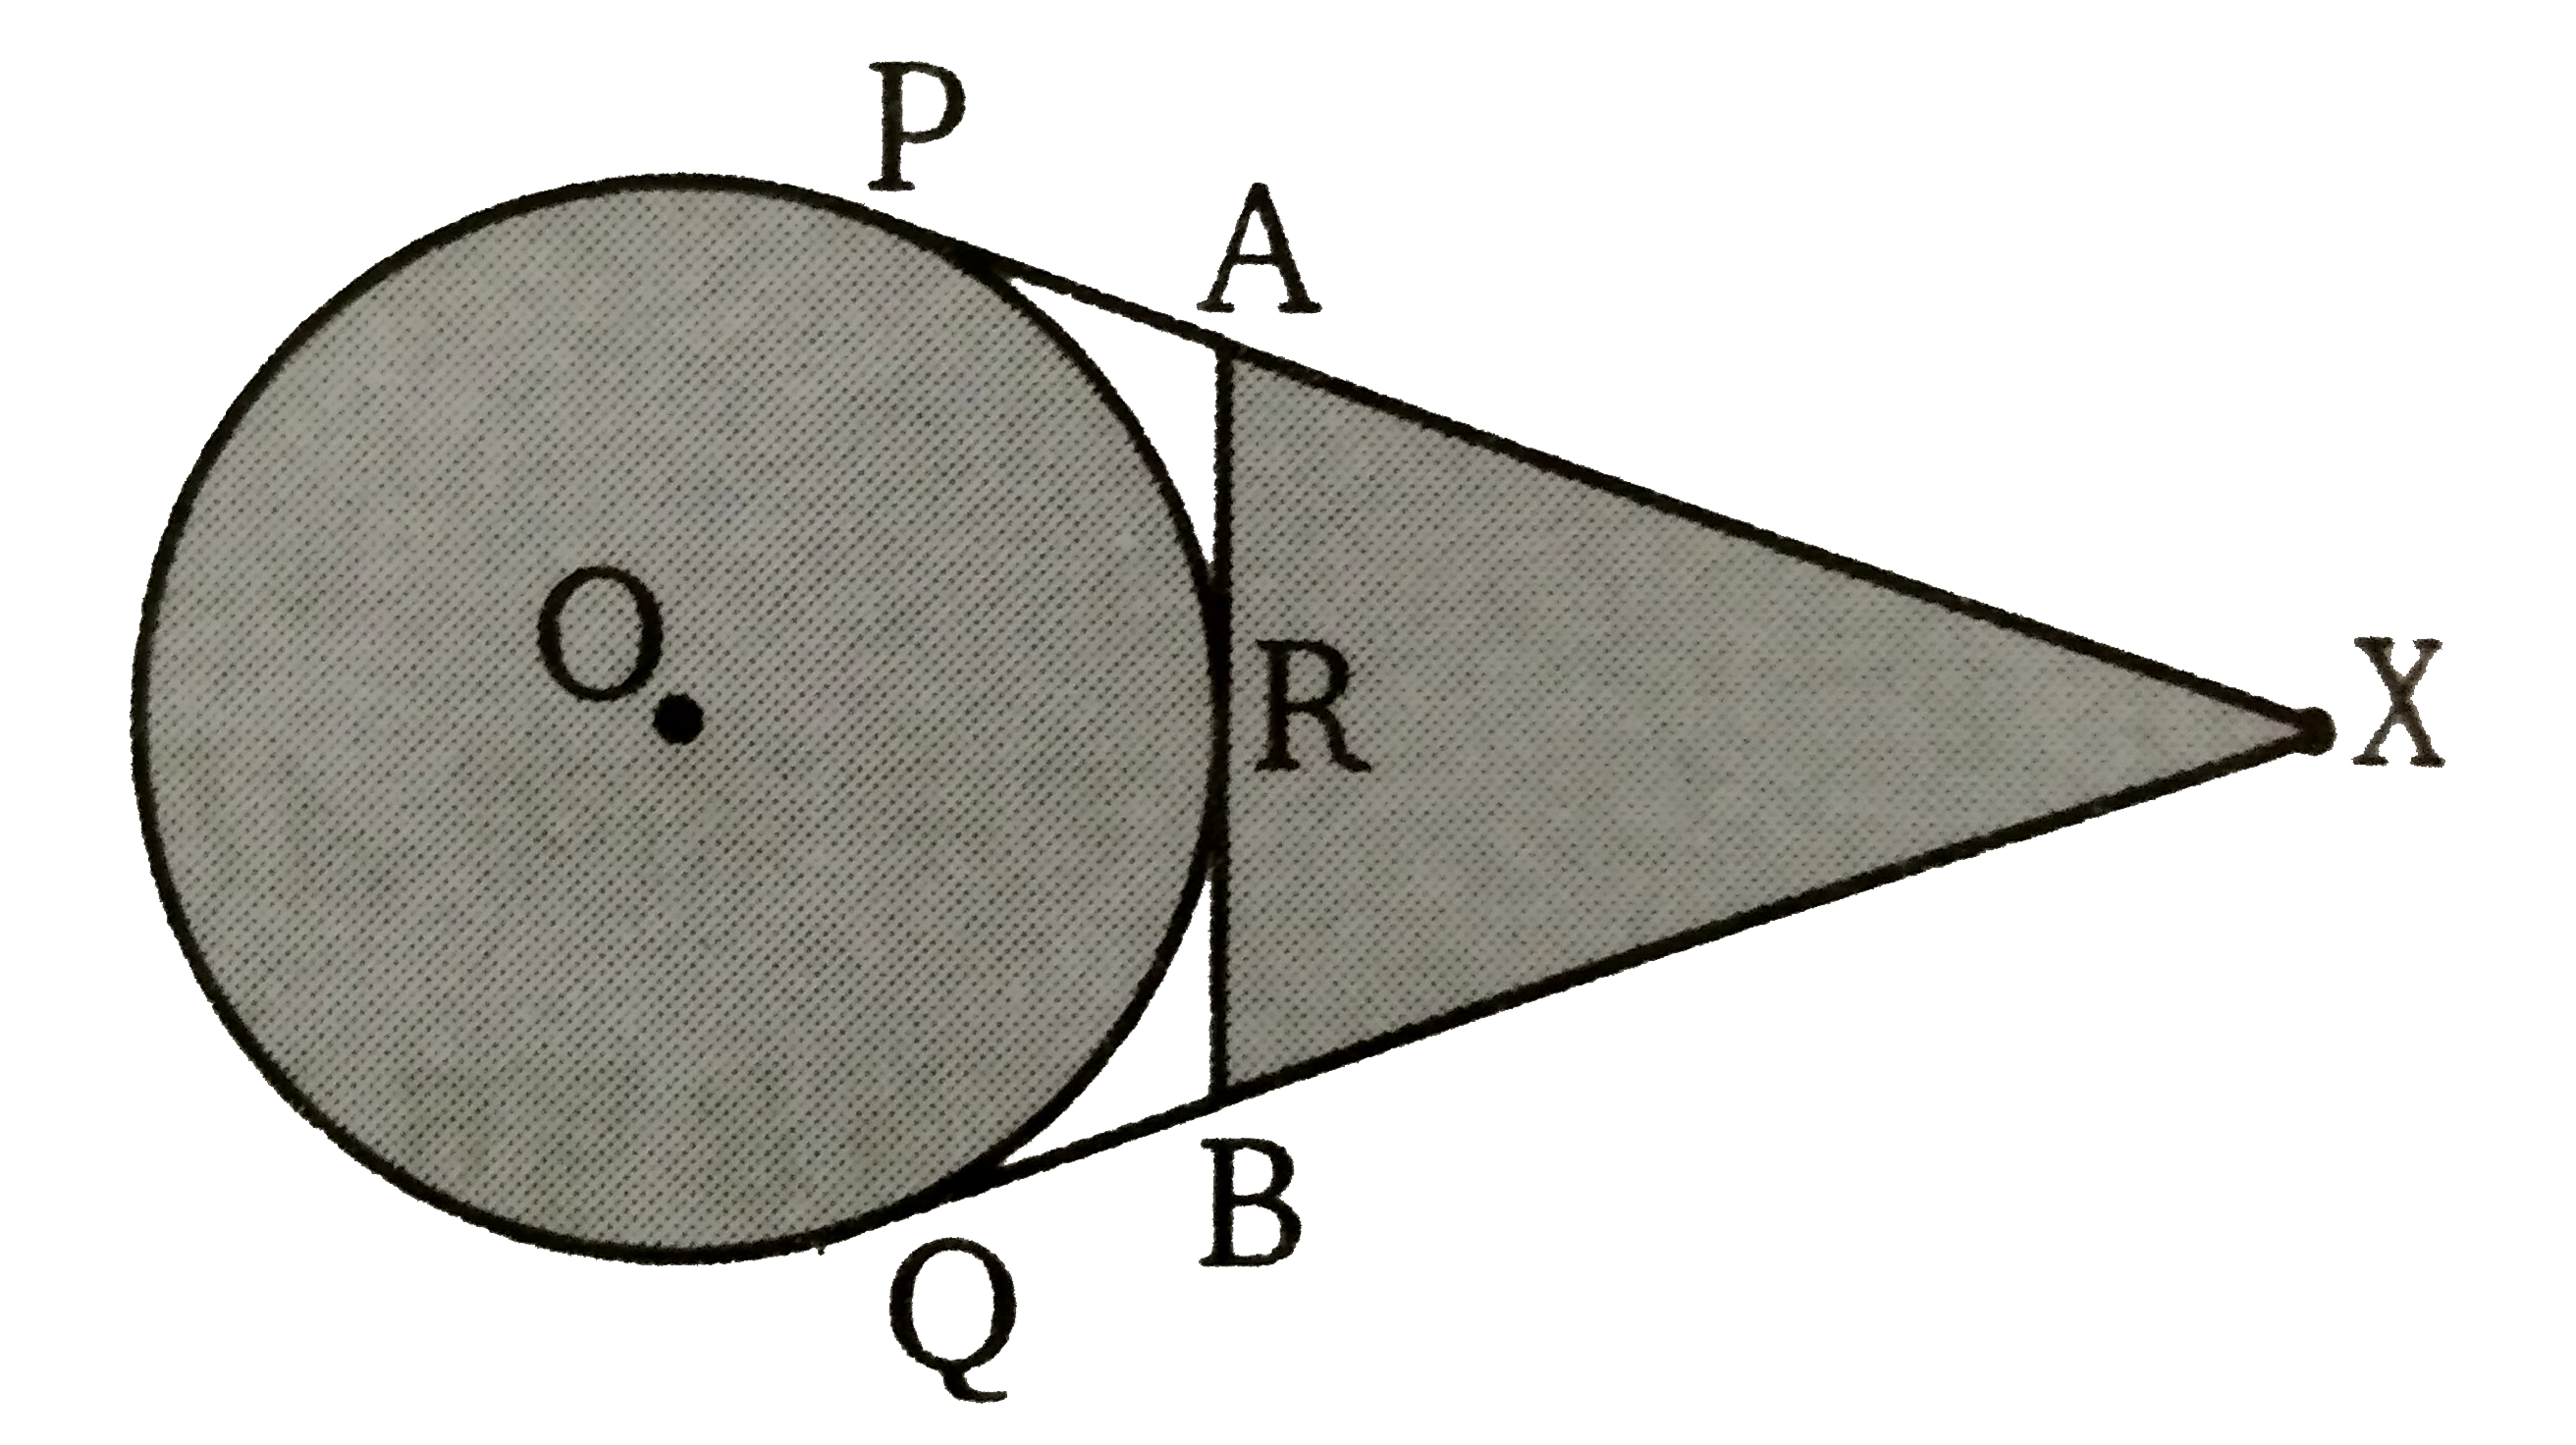 संलग्न चित्र में O  केंद्र के एक वृत्त पर बिन्दु X  से दो स्पर्शी XP  तथा XQ  हैं। तथा R,   वृत्त पर कोई बिन्दु हैं। सिद्ध कीजिए कि   XA + AR = XB + BR